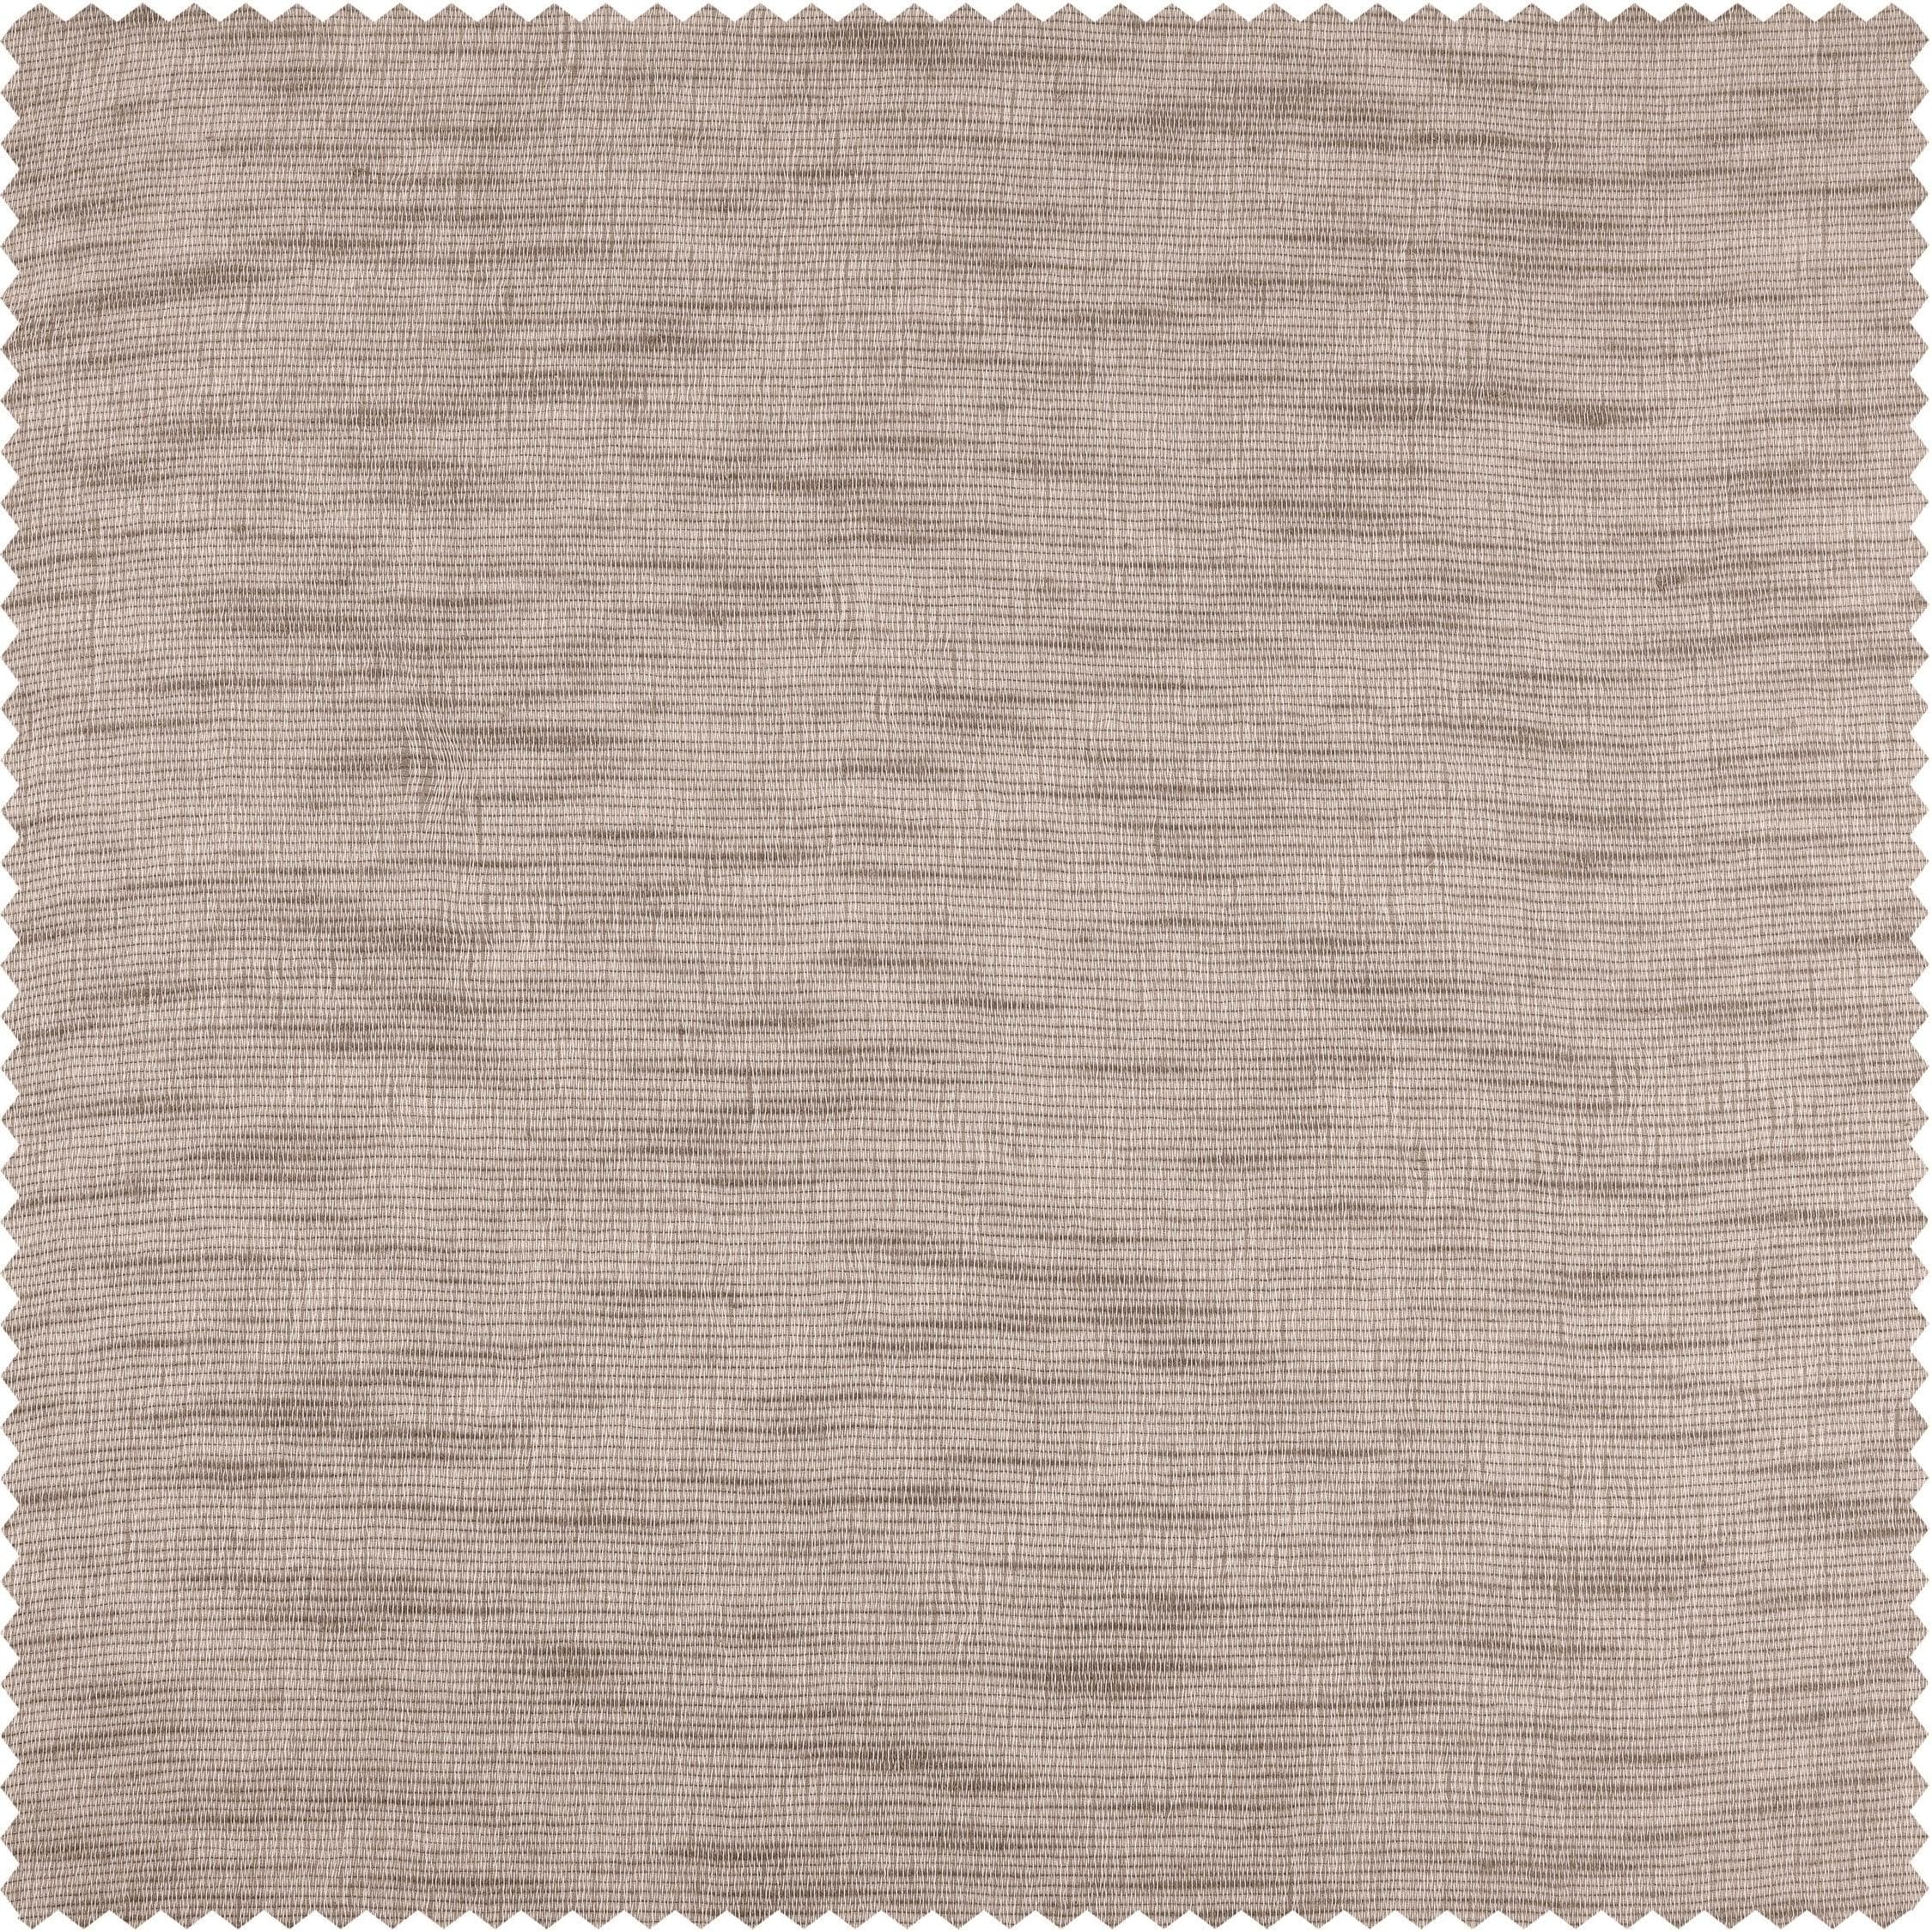 Light Grey Open Weave Linen Blend Sheer Swatch